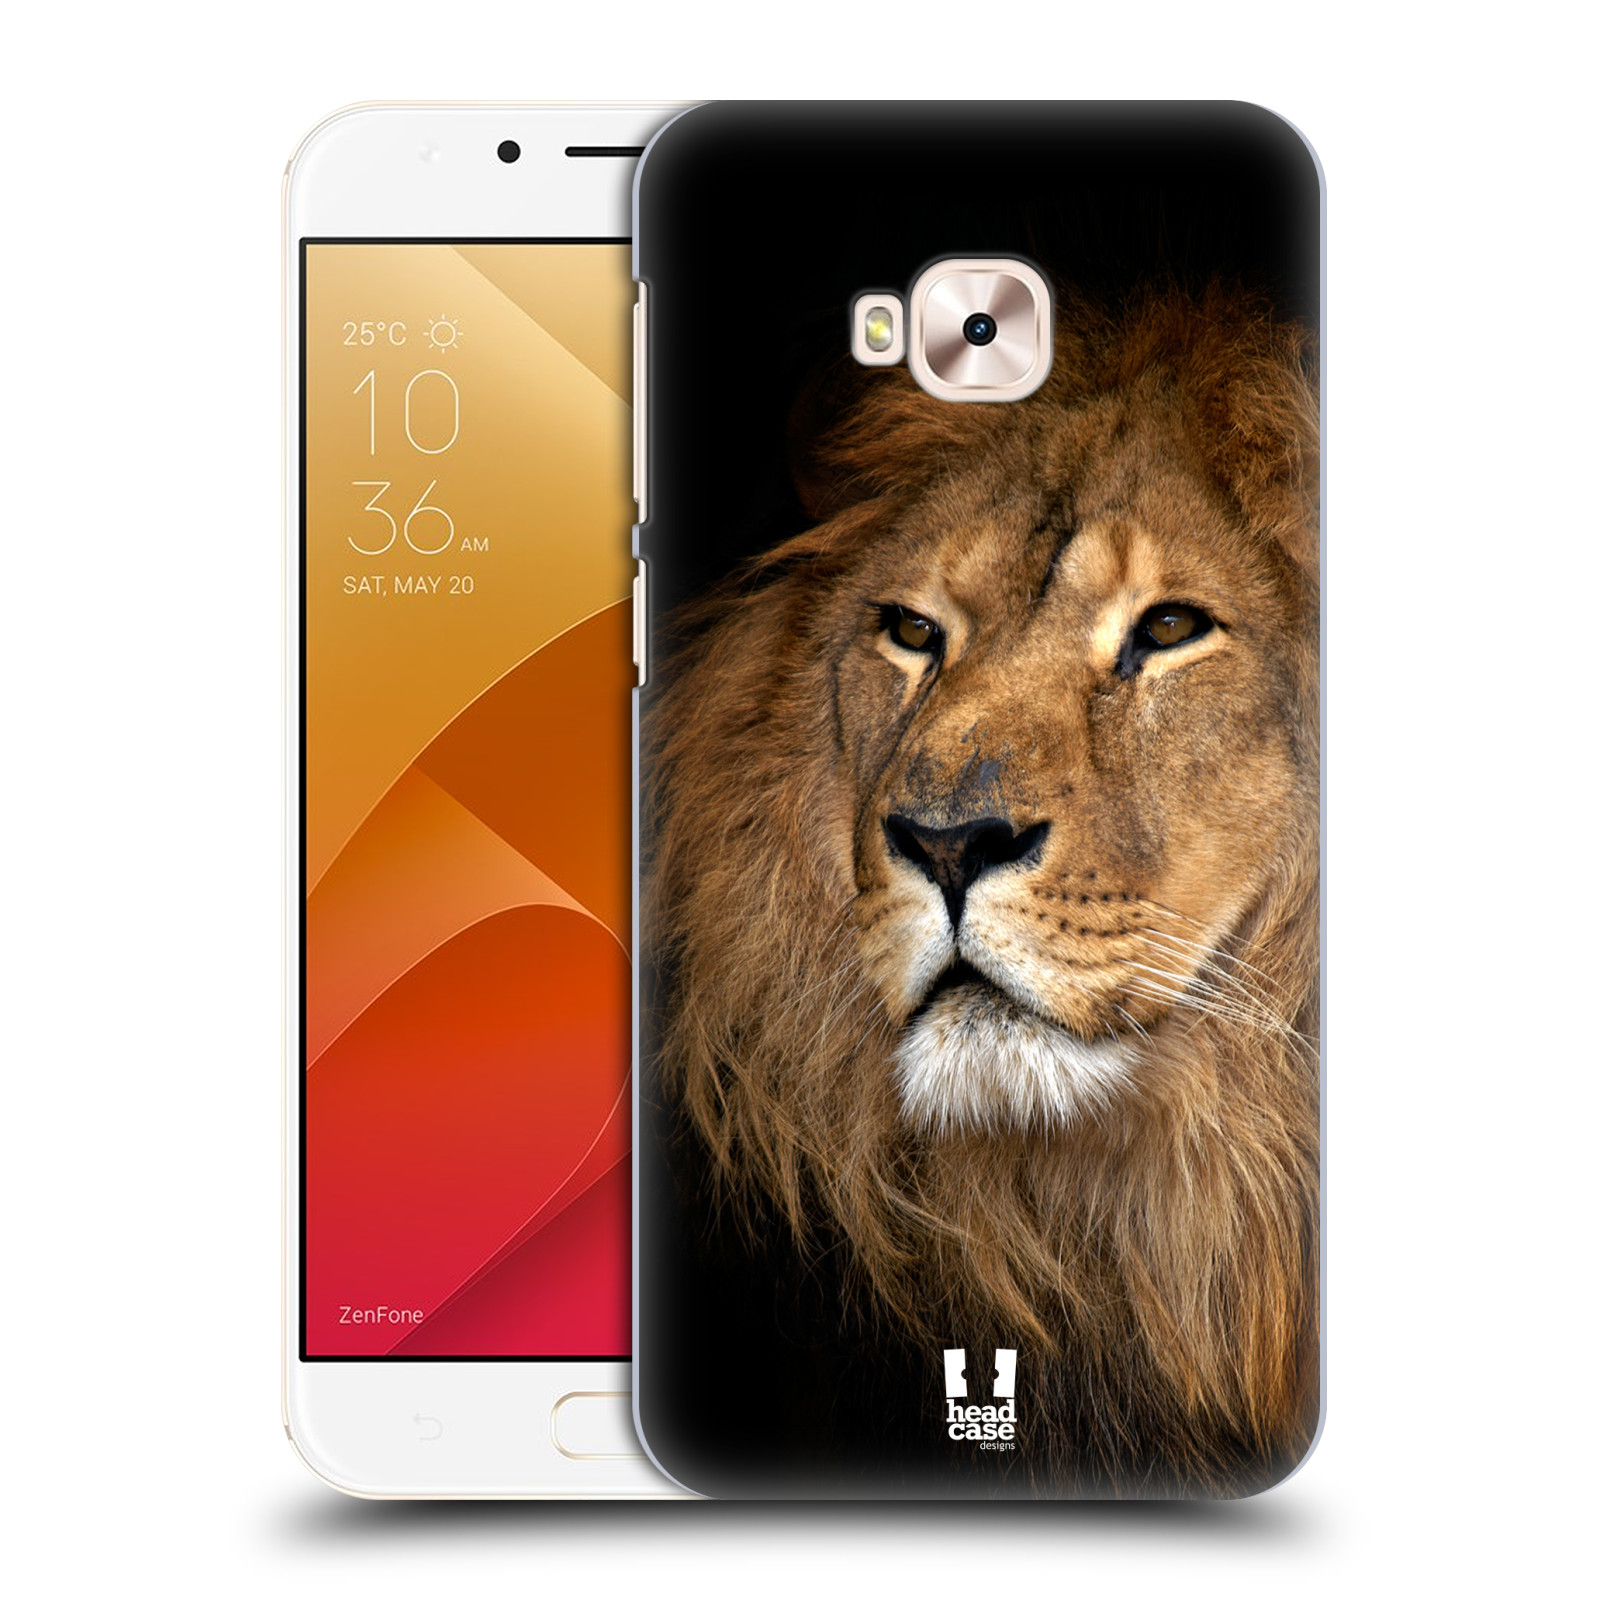 Zadní obal pro mobil Asus Zenfone 4 Selfie Pro ZD552KL - HEAD CASE - Svět zvířat král zvířat Lev